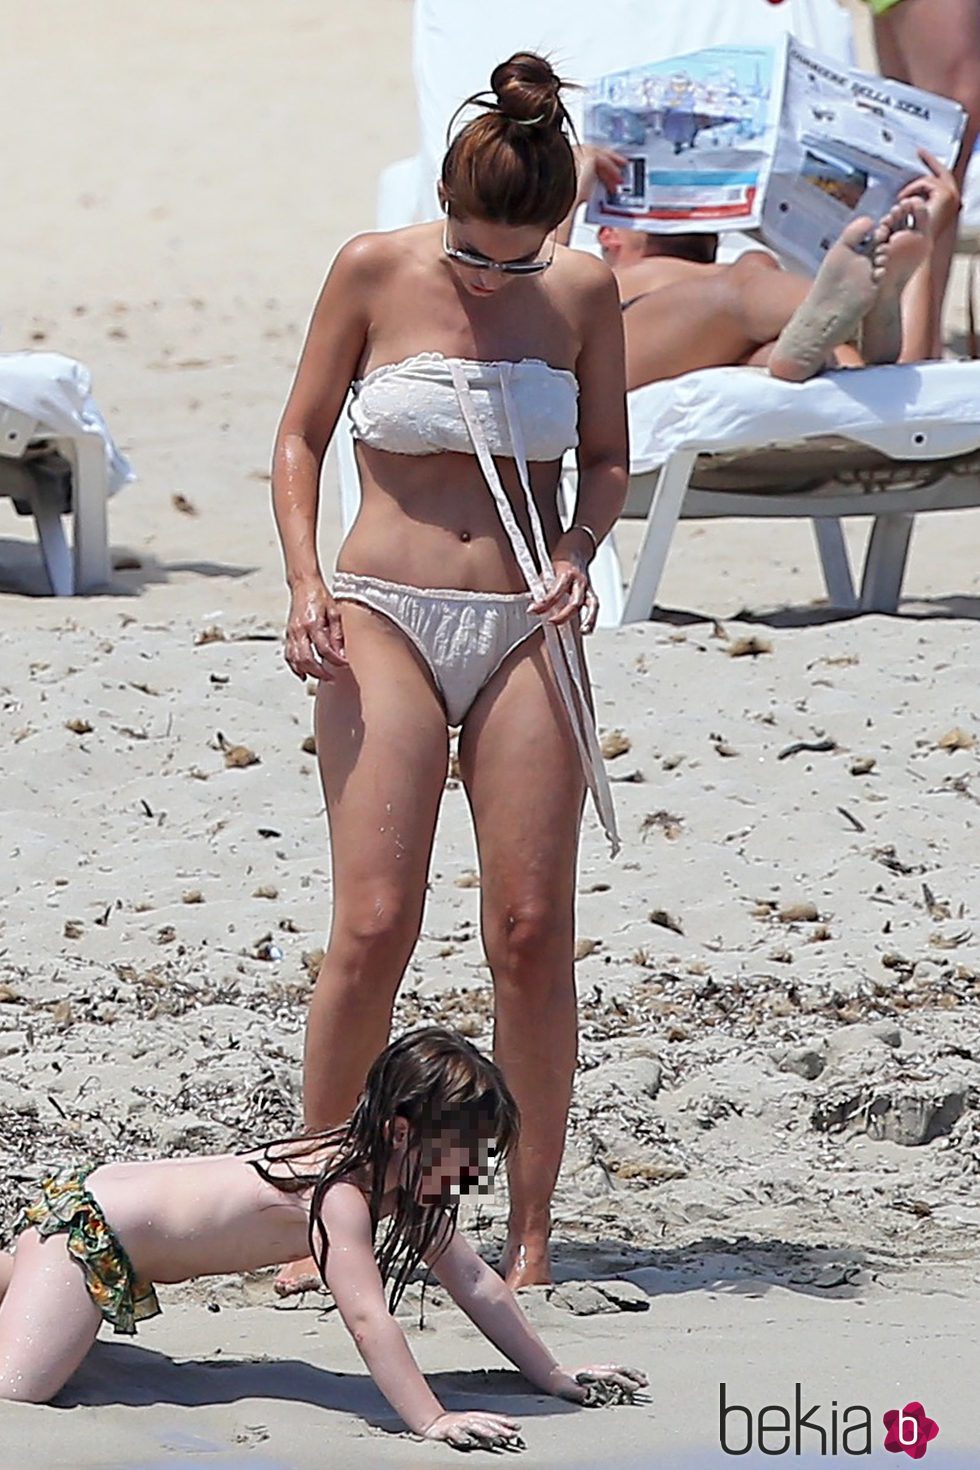 Nagore Aranburu con su hija Ane jugando en las playas de Ibiza